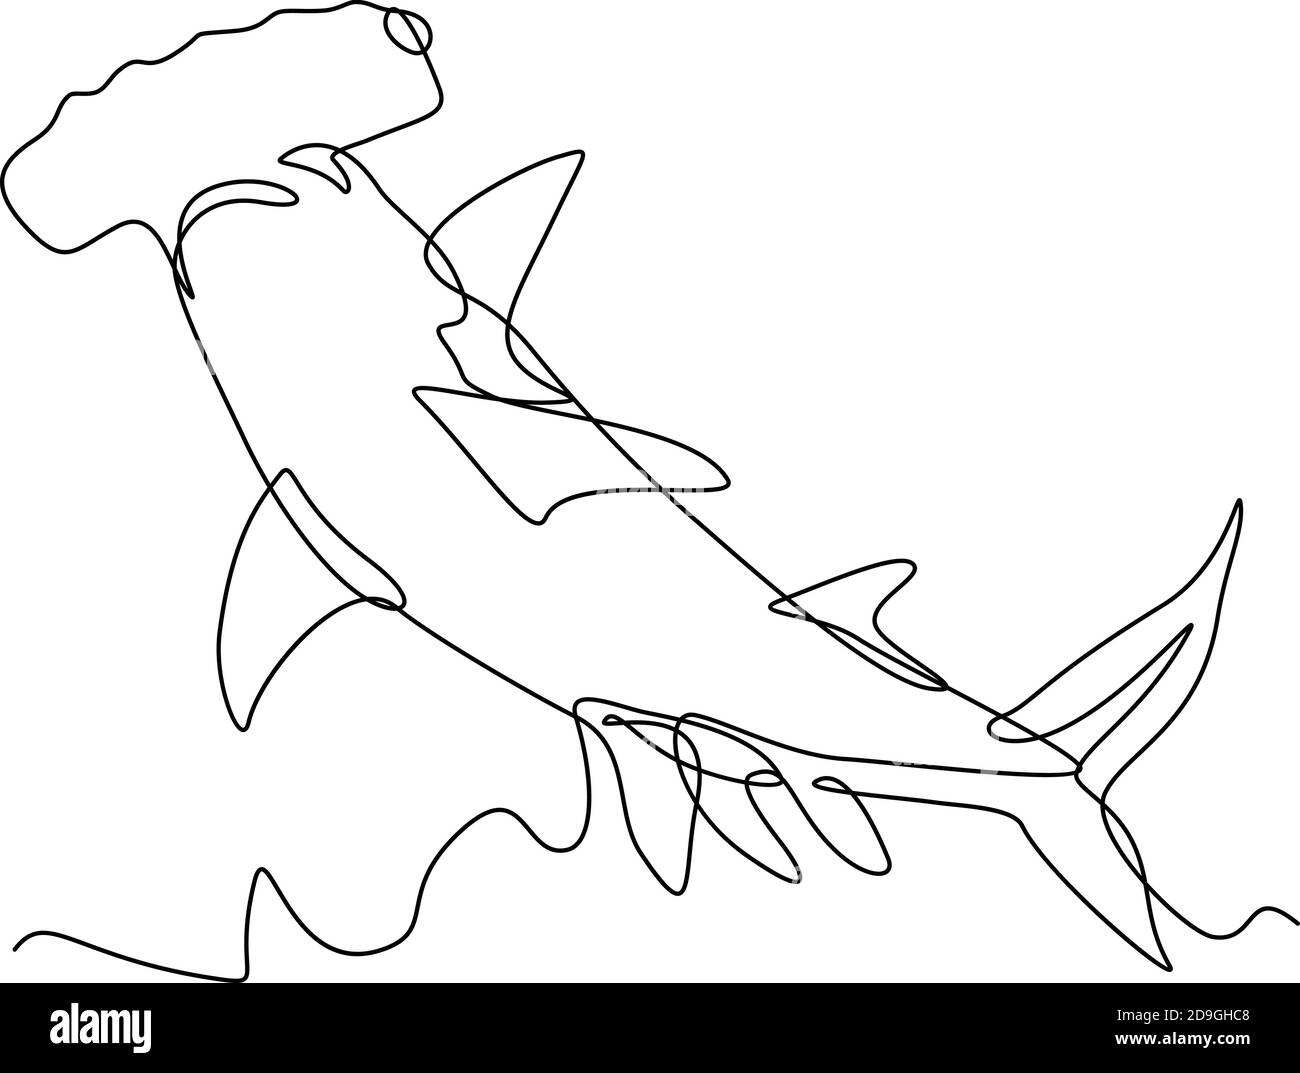 Illustrazione a linea continua di una testa di martello scalpellata Sphyrna lewini, una specie di squalo di testa di martello, e parte della famiglia Sphyrnidaeon visto da Illustrazione Vettoriale